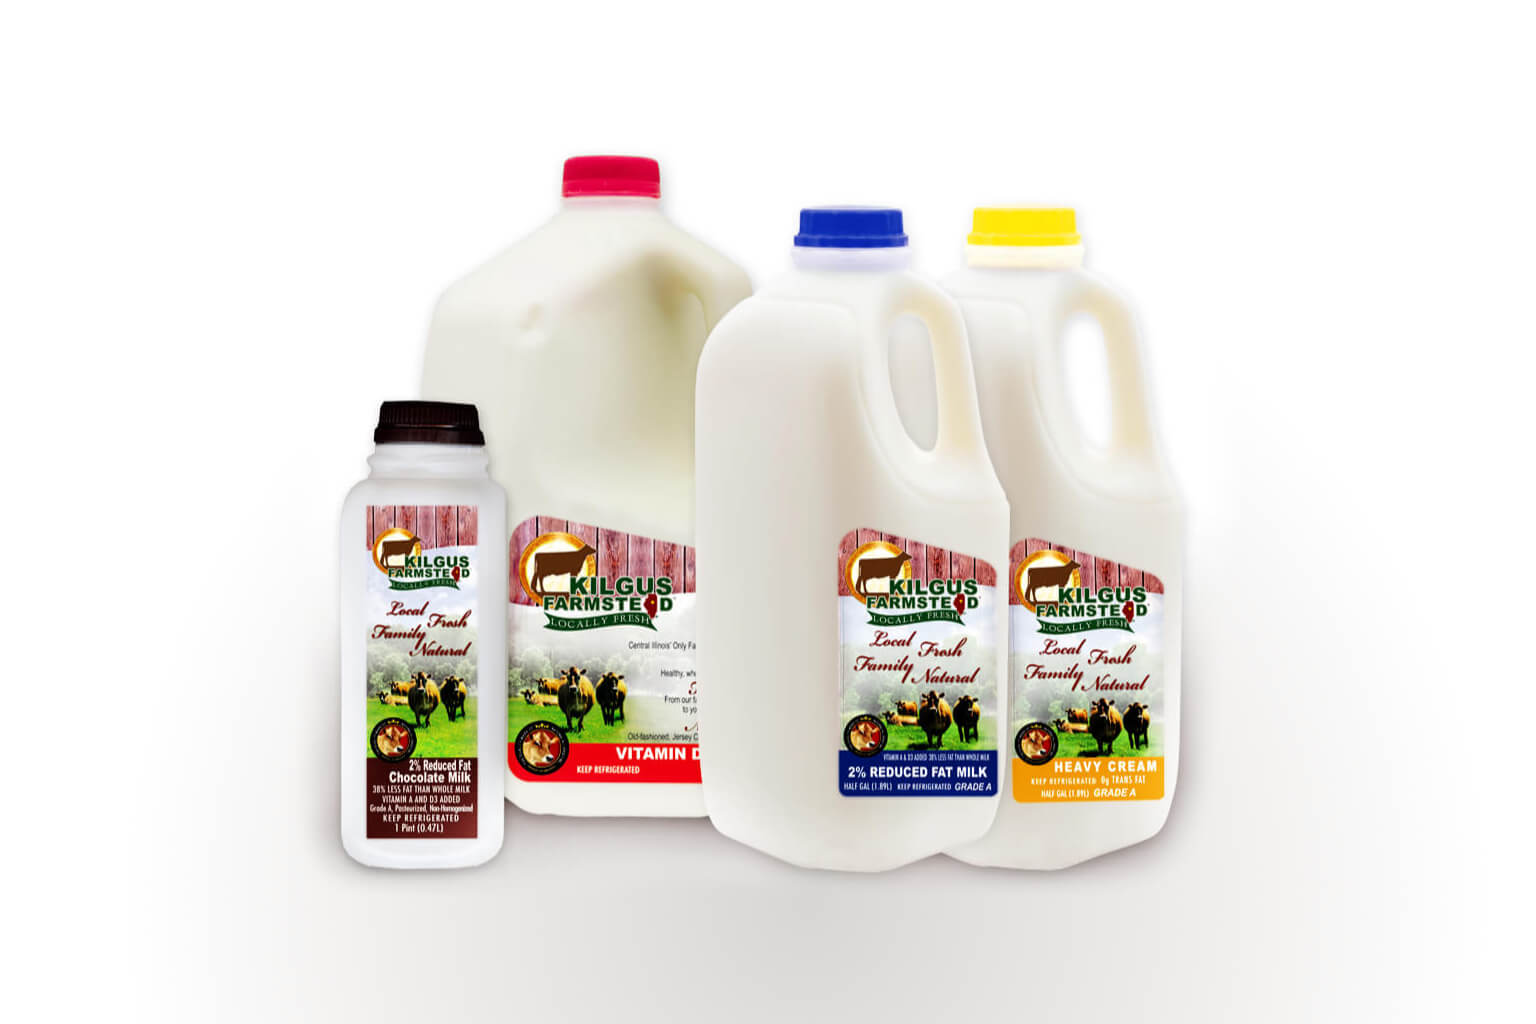 Kilgus Farmstead milk product sizes